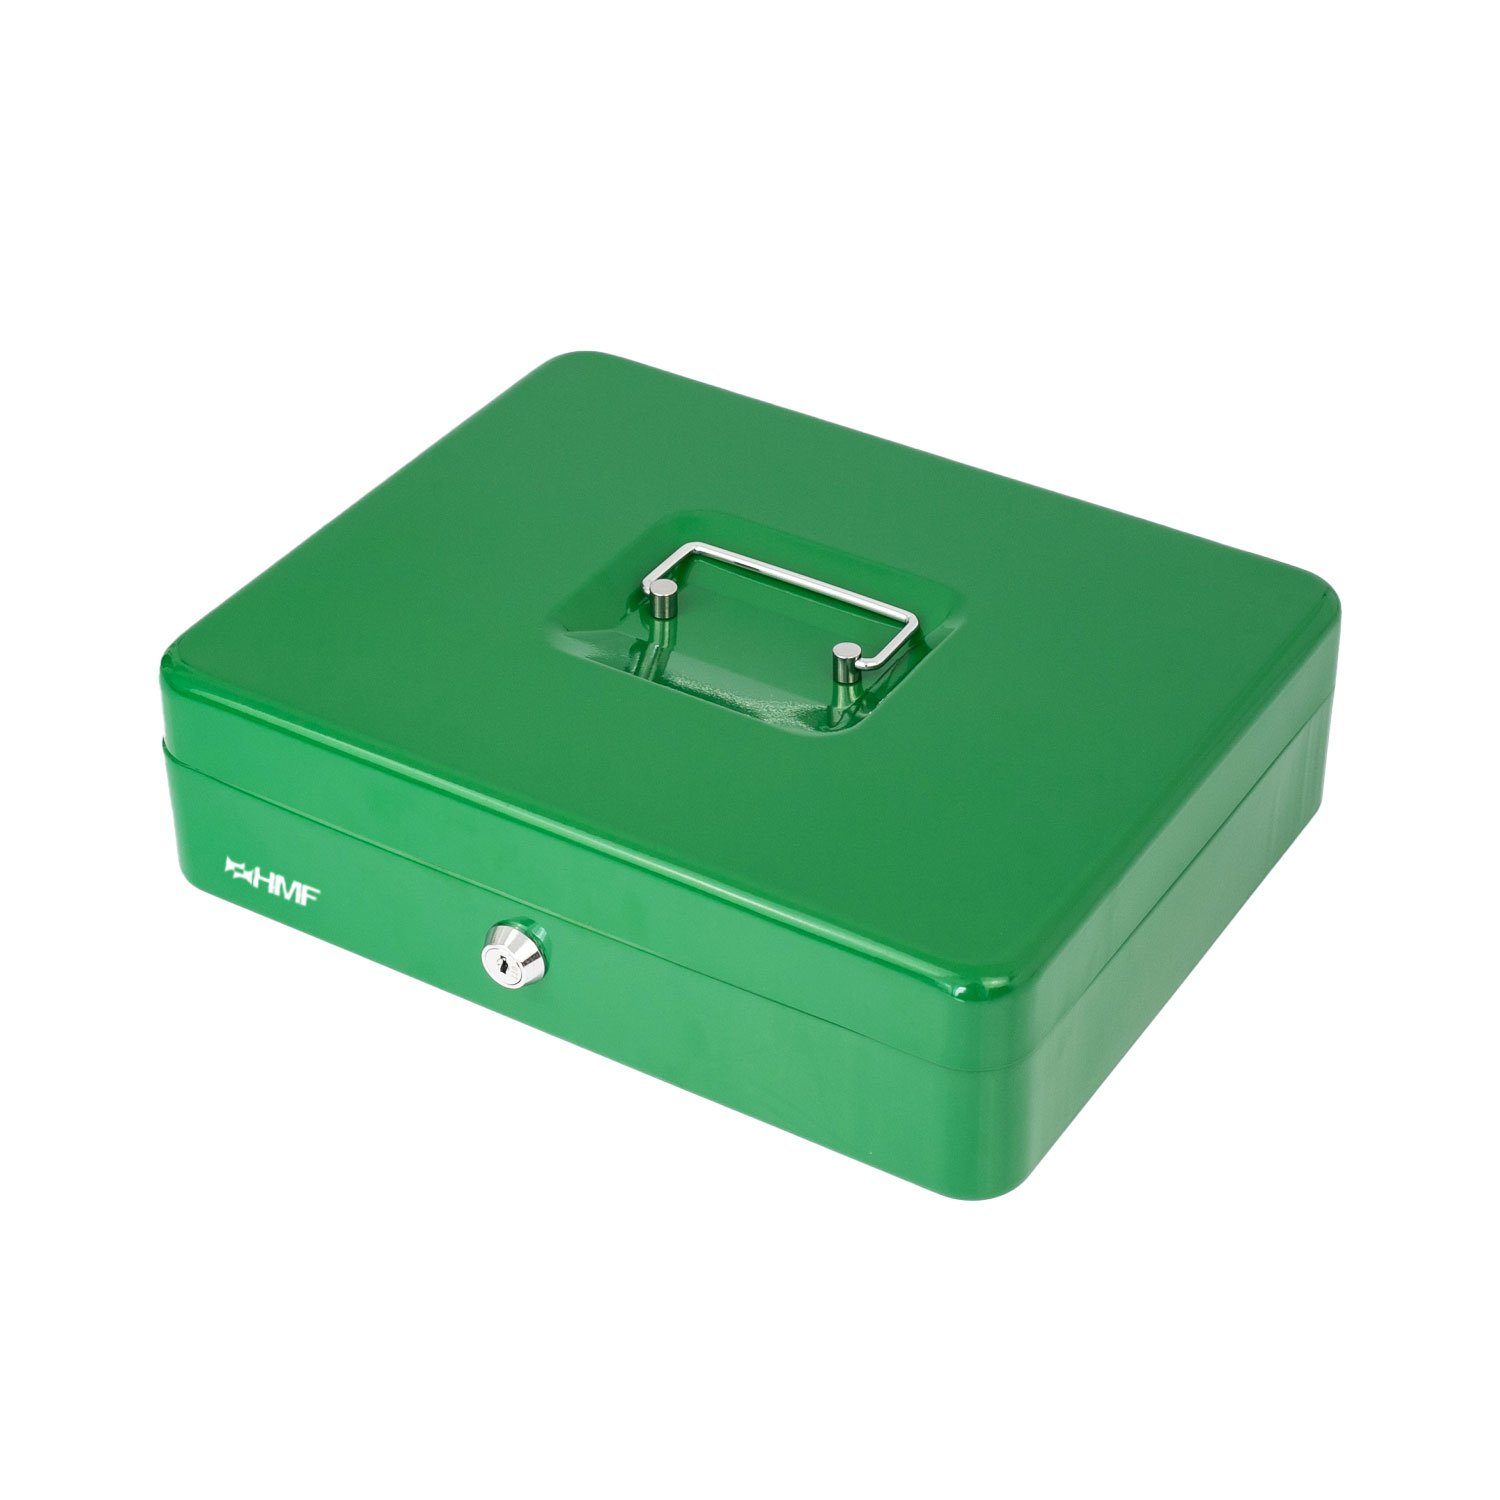 grün Abschließbare Bargeldkasse Schlüssel, HMF Geldkassette 30,5x24x8,5cm robuste Münzzählbrett Scheinfach, mit Geldbox mit und